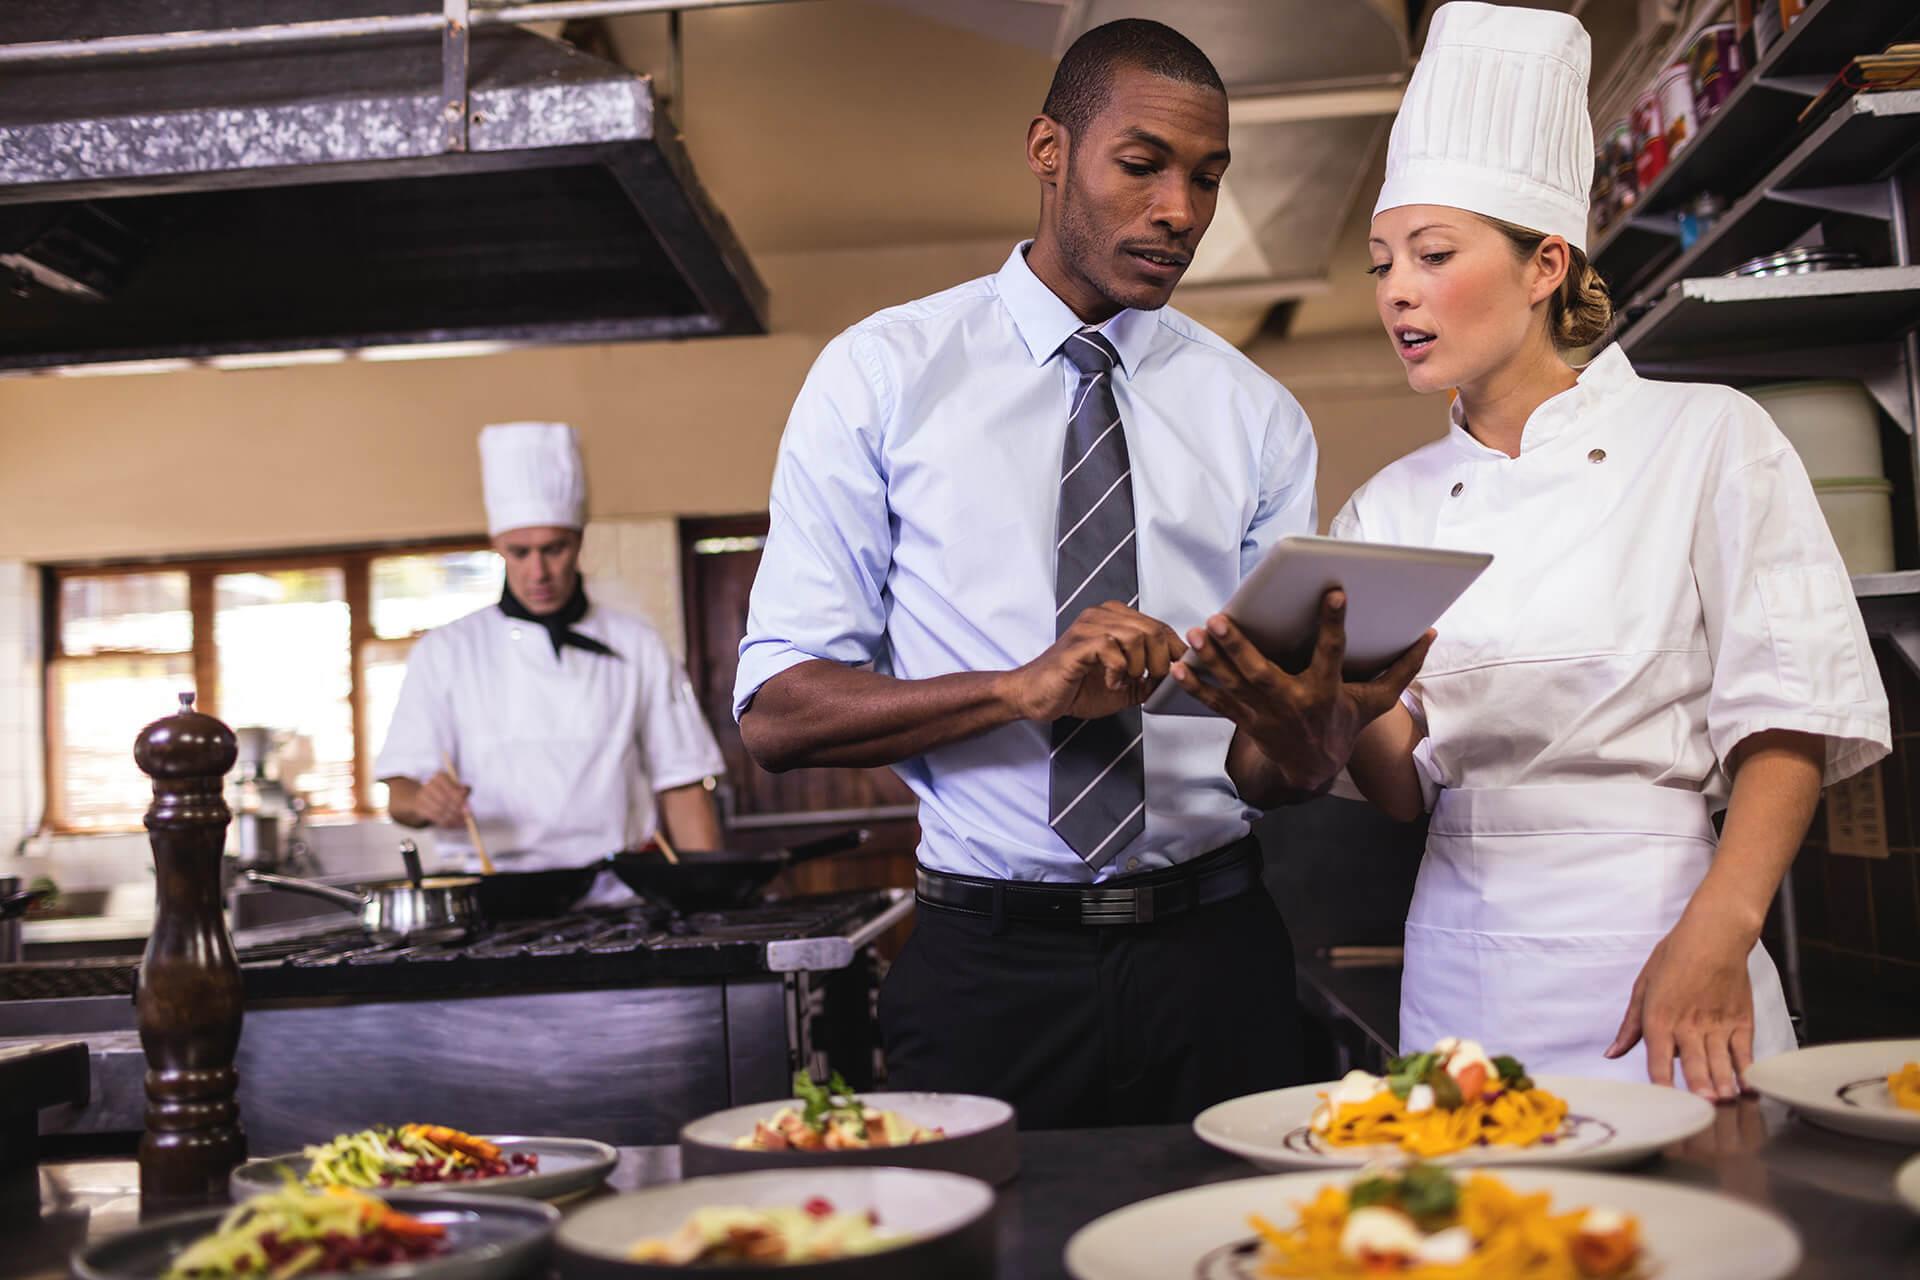 Ngành học quản trị nhà hàng và dịch vụ ăn uống đào tạo các kiến thức và kỹ năng liên quan đến lĩnh vực nhà hàng trên phương diện ẩm thực